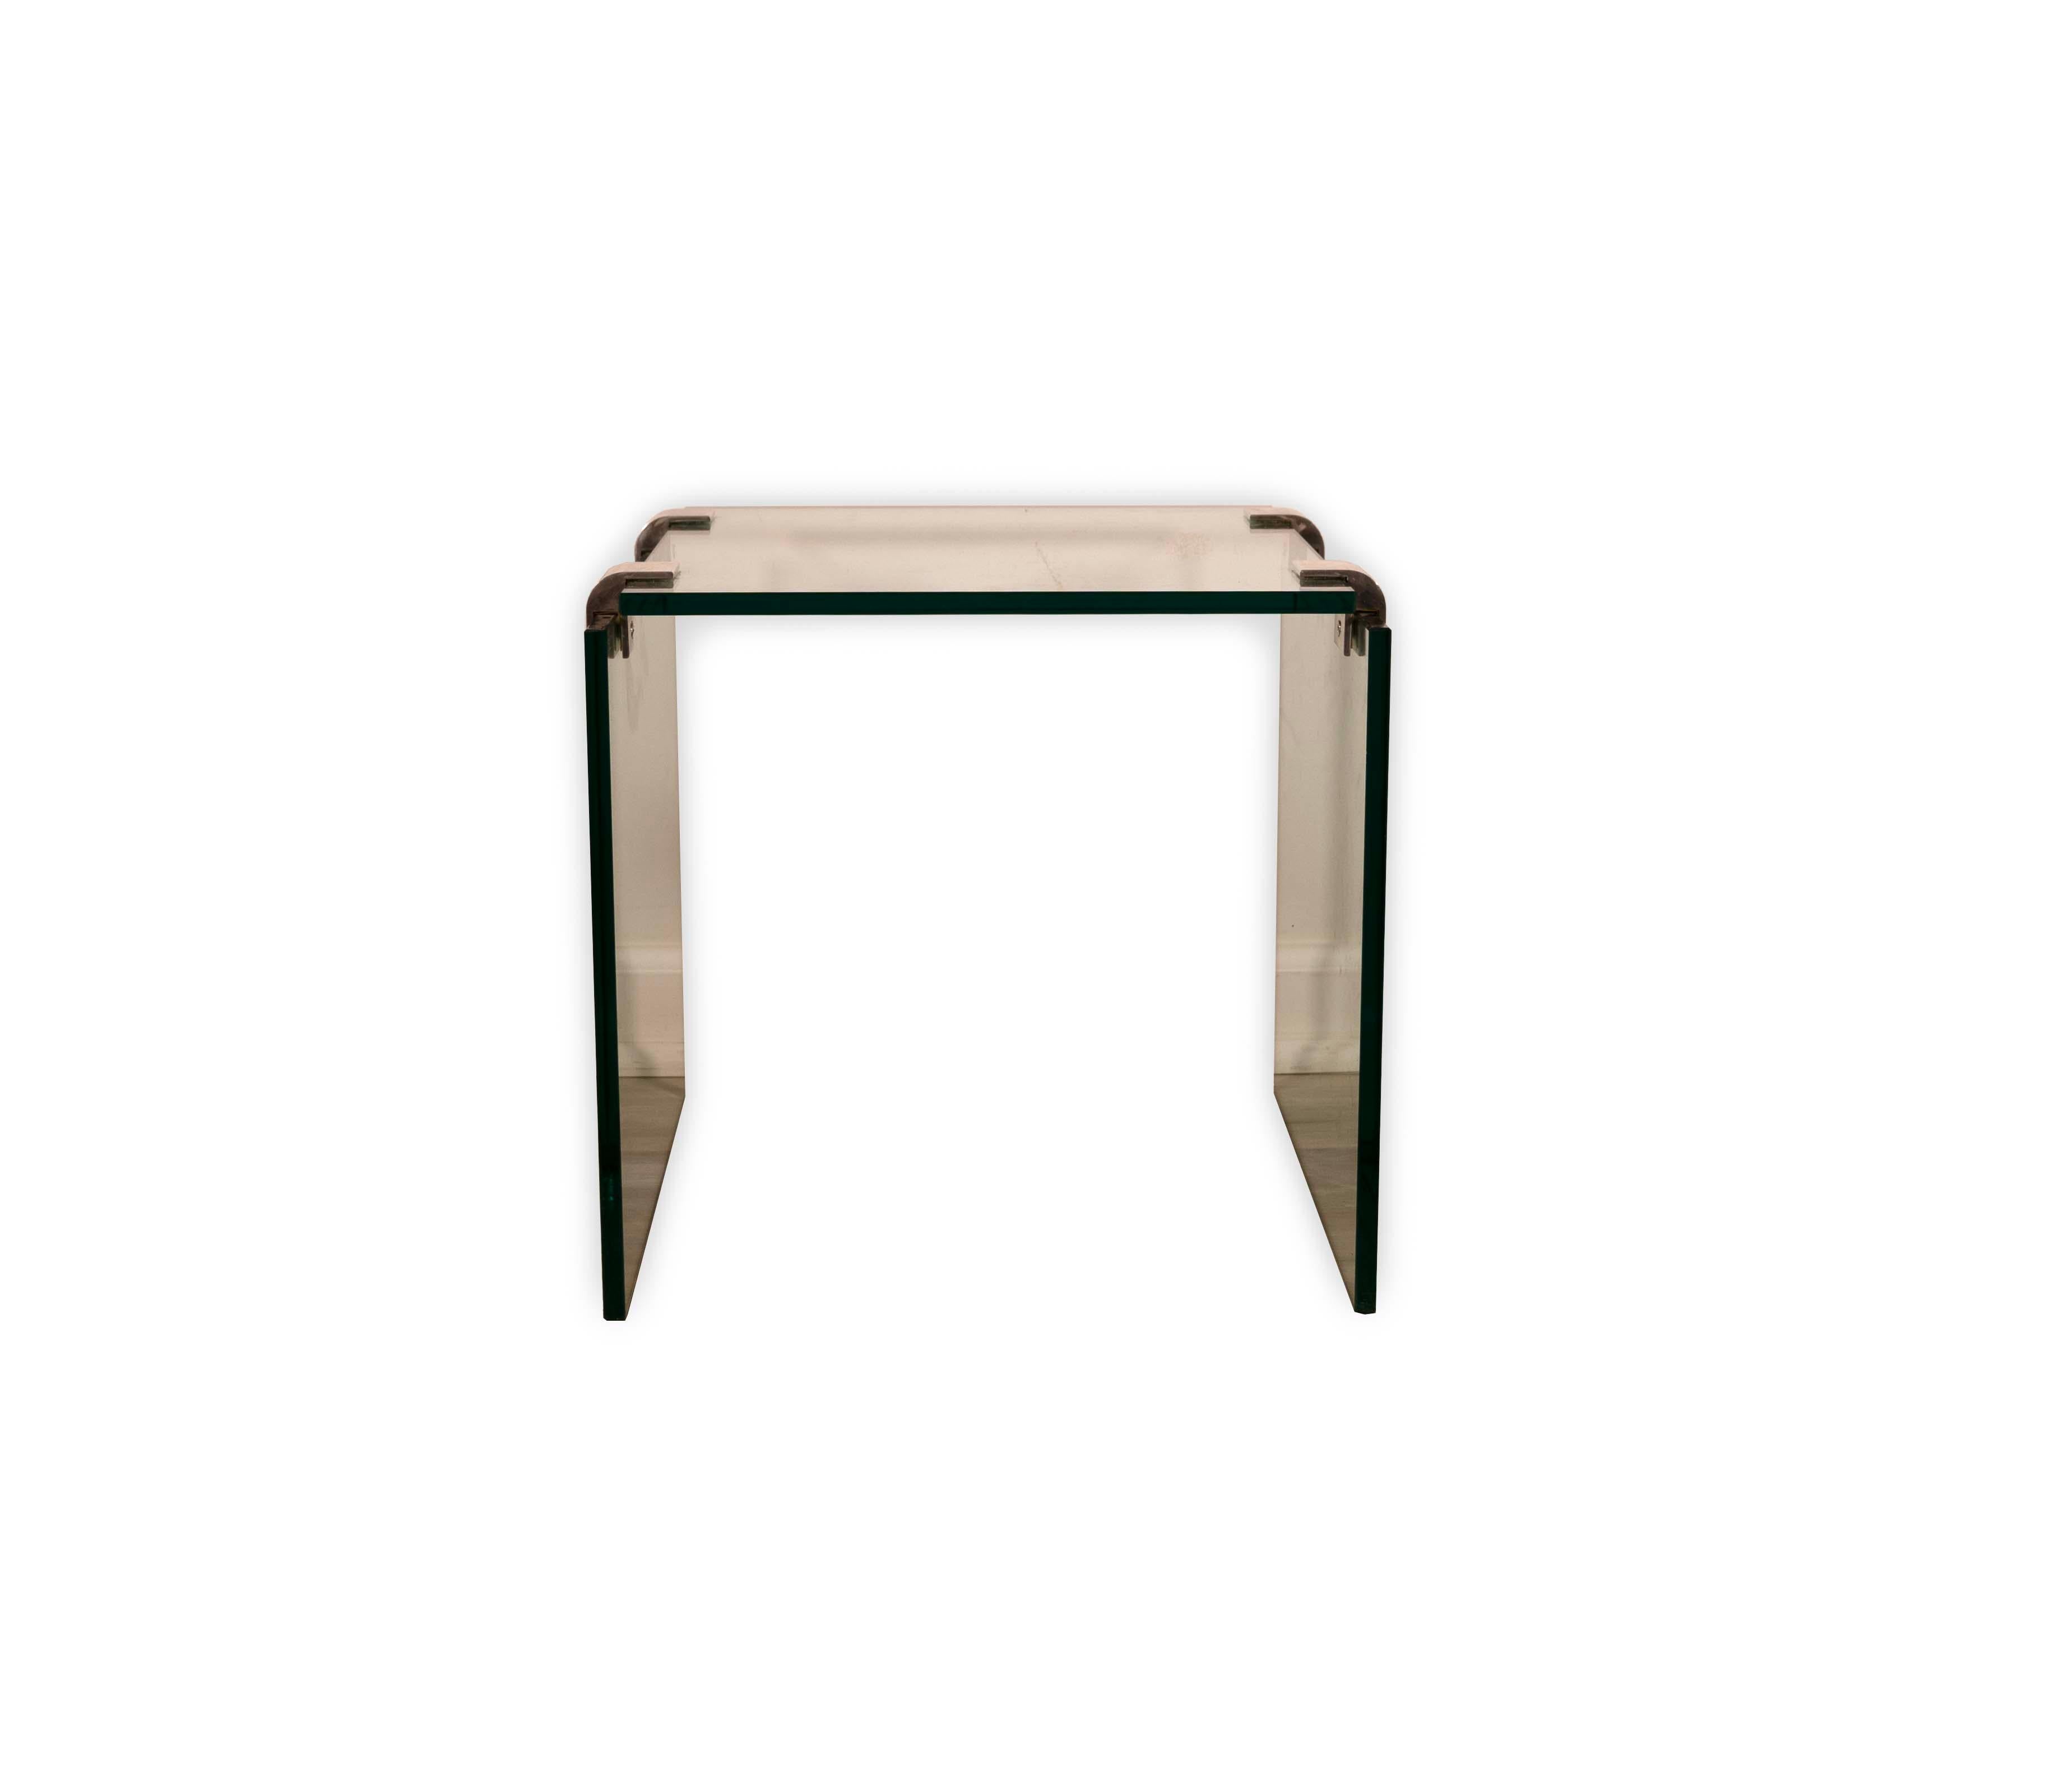 Élégante et moderne, la table d'appoint latérale Leon Rosen for Pace respire la sophistication et l'élégance. Fabriquée avec un mélange homogène de chrome brillant et de verre trempé transparent, cette table d'appoint incarne le chic minimaliste du